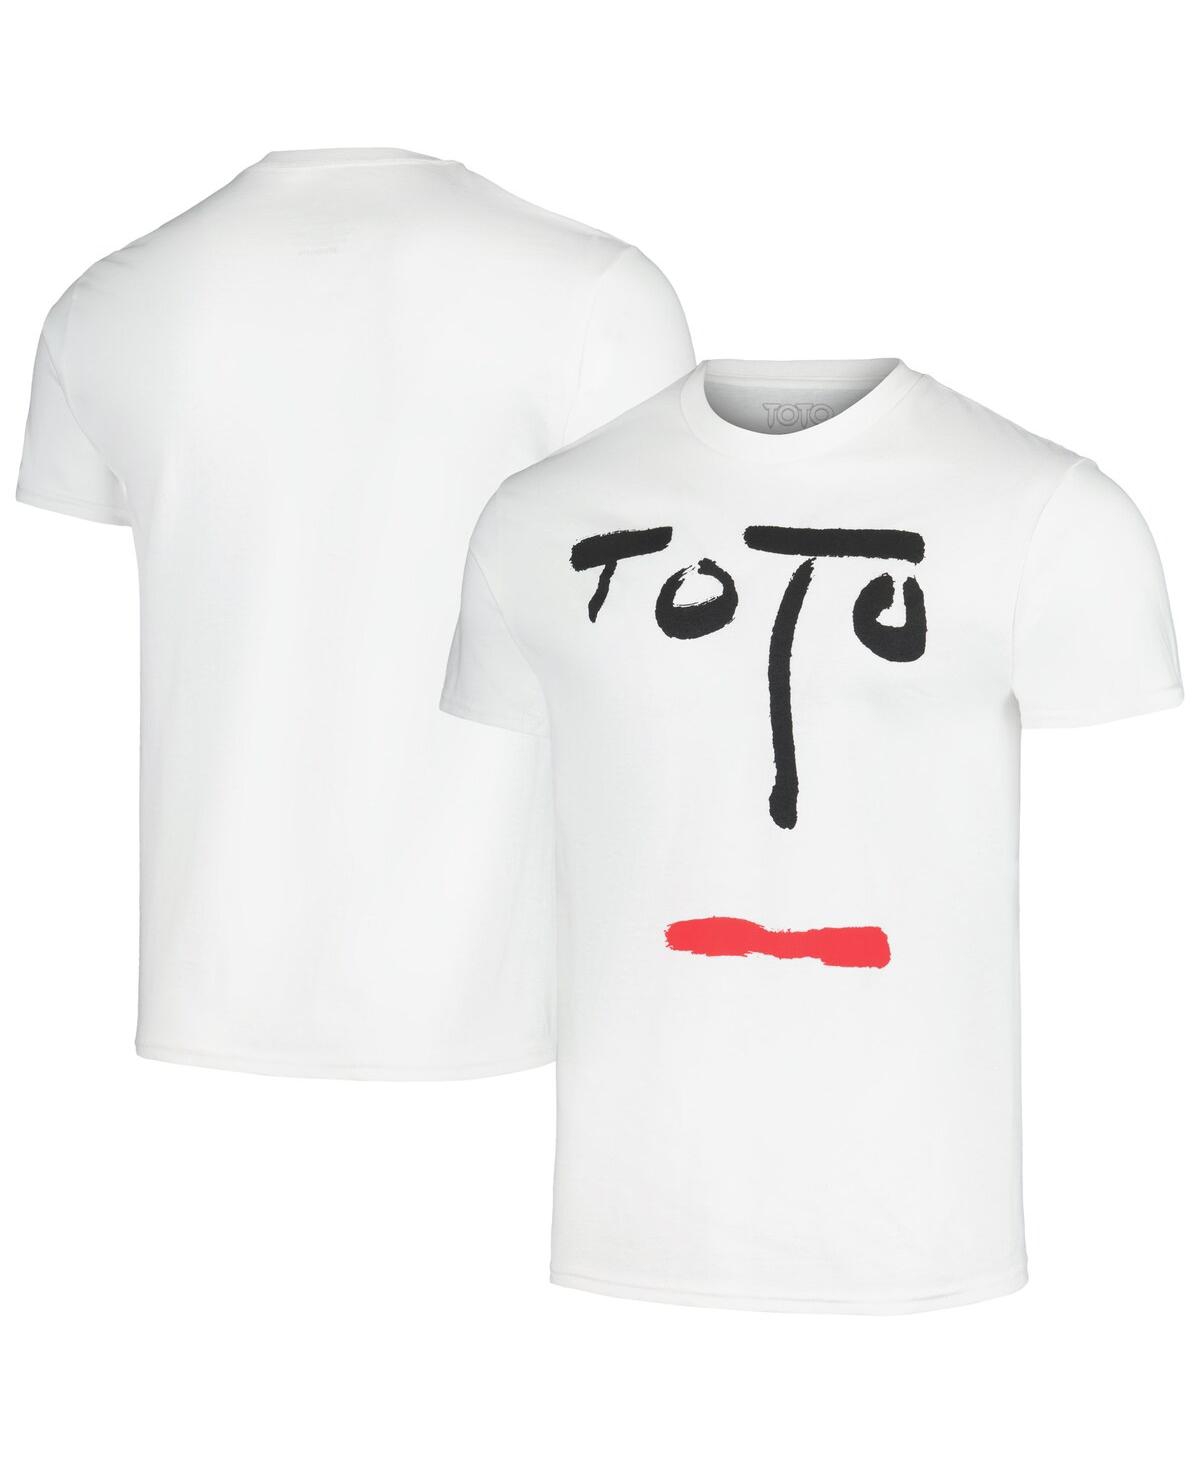 Men's Manhead Merch White Toto Turn Back Graphic T-shirt - White